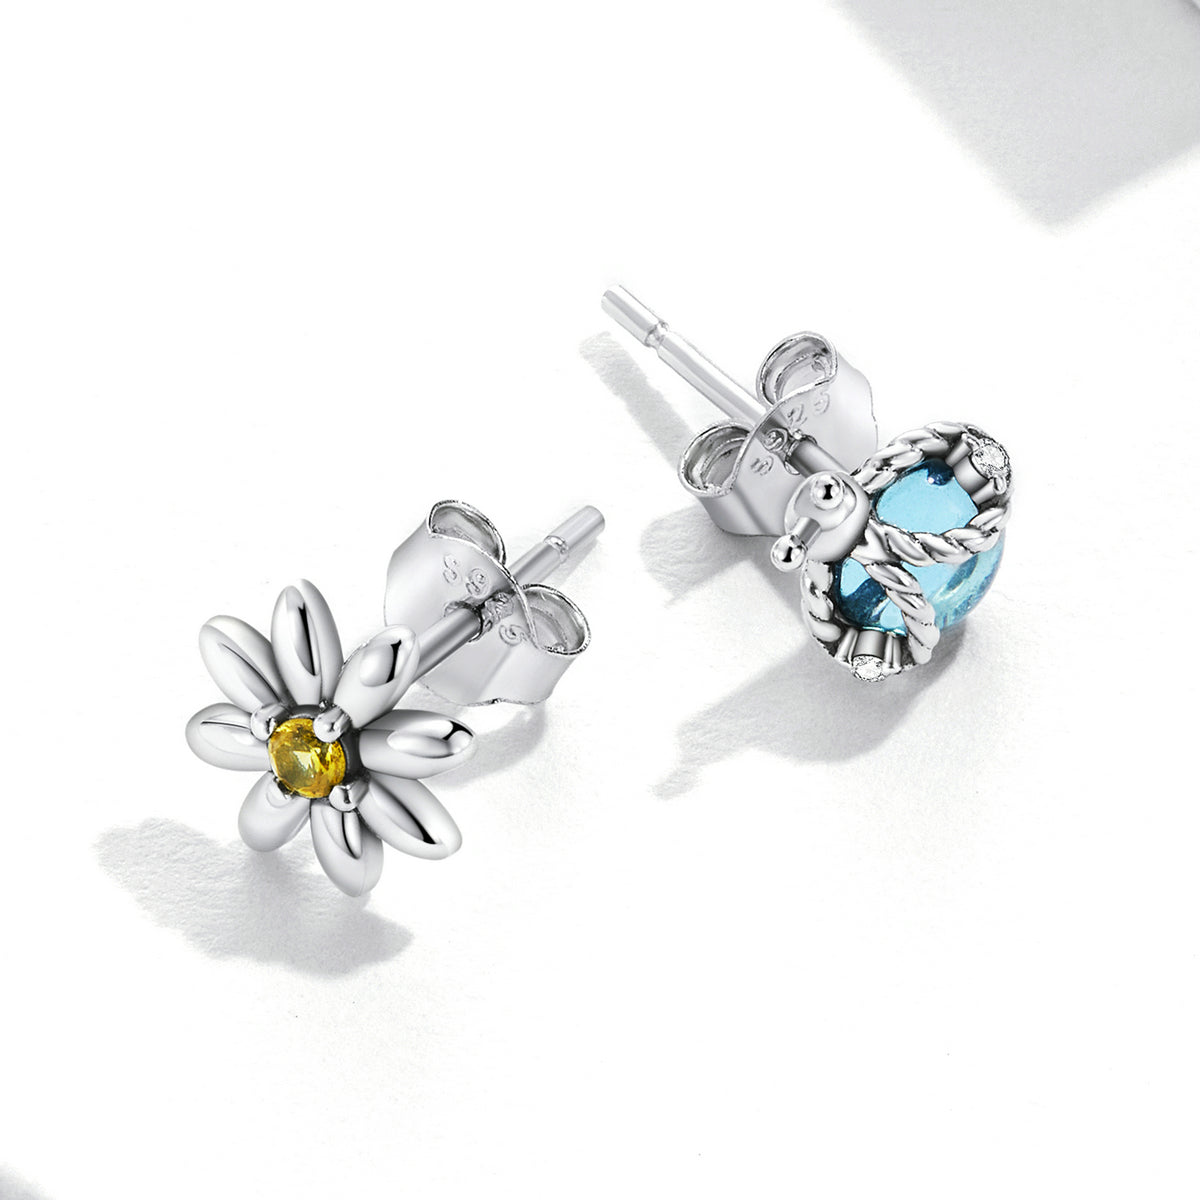 Ladybird earrings, 92.5% Sterling Silver, Daisy ear stud